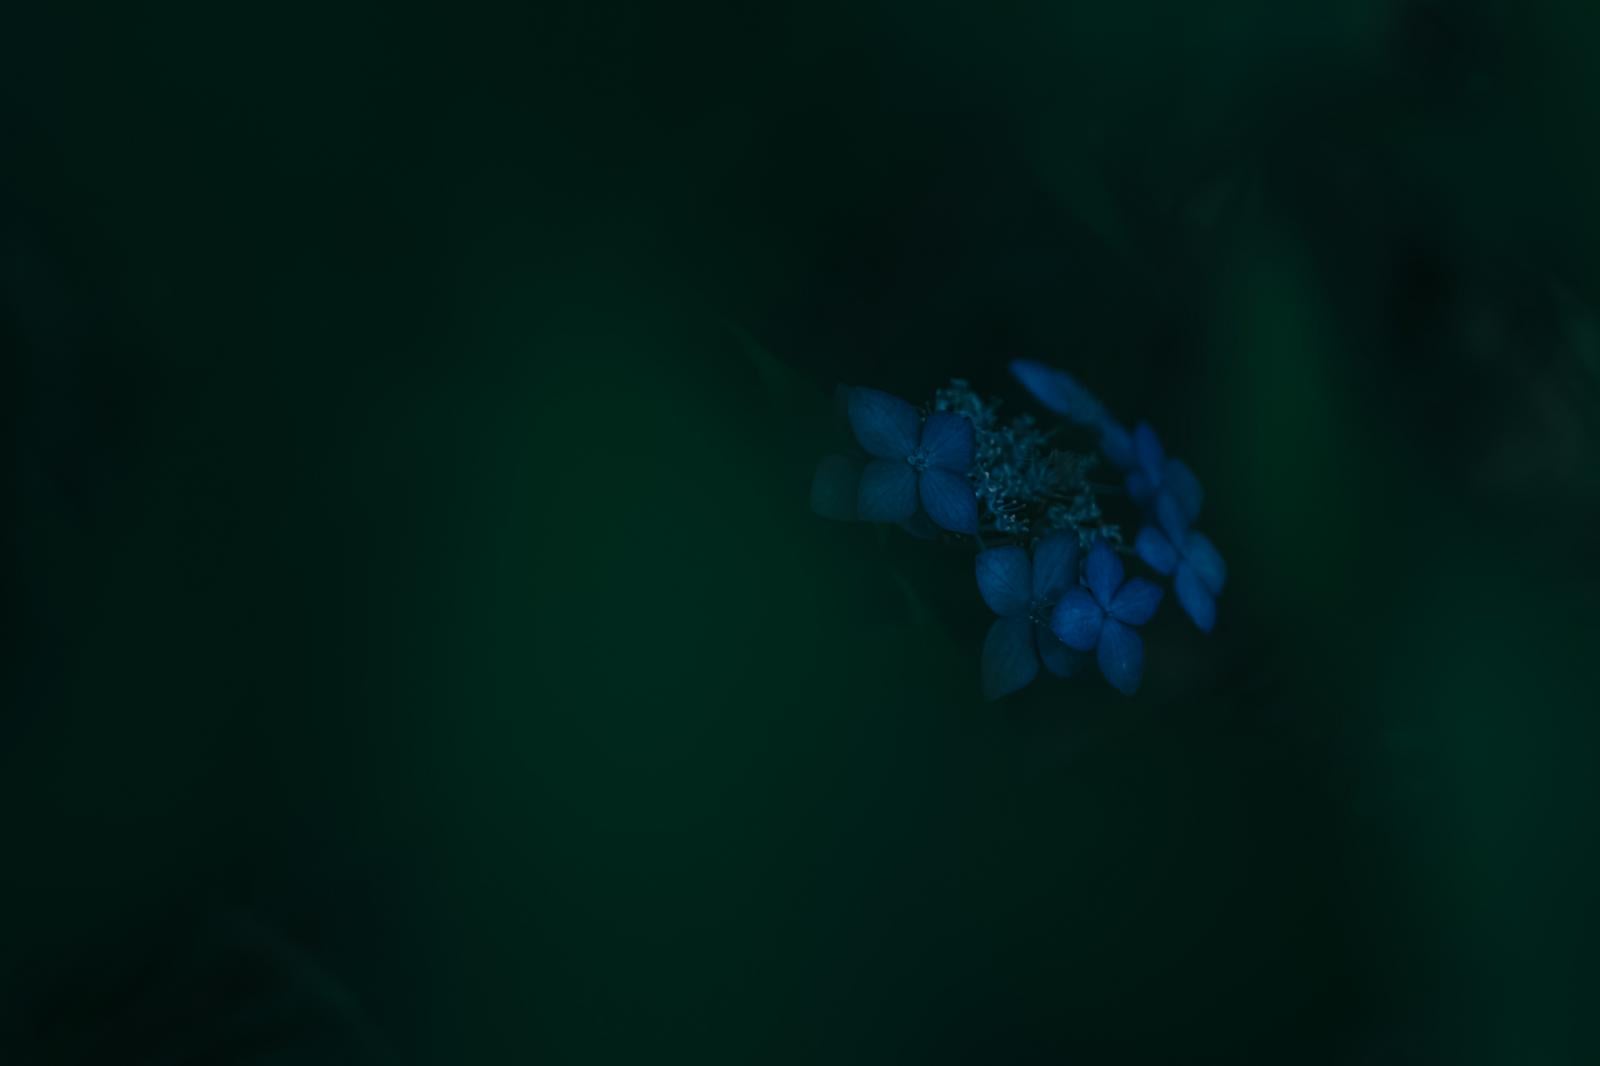 「背景が溶けるような暗闇に咲く青い紫陽花」の写真